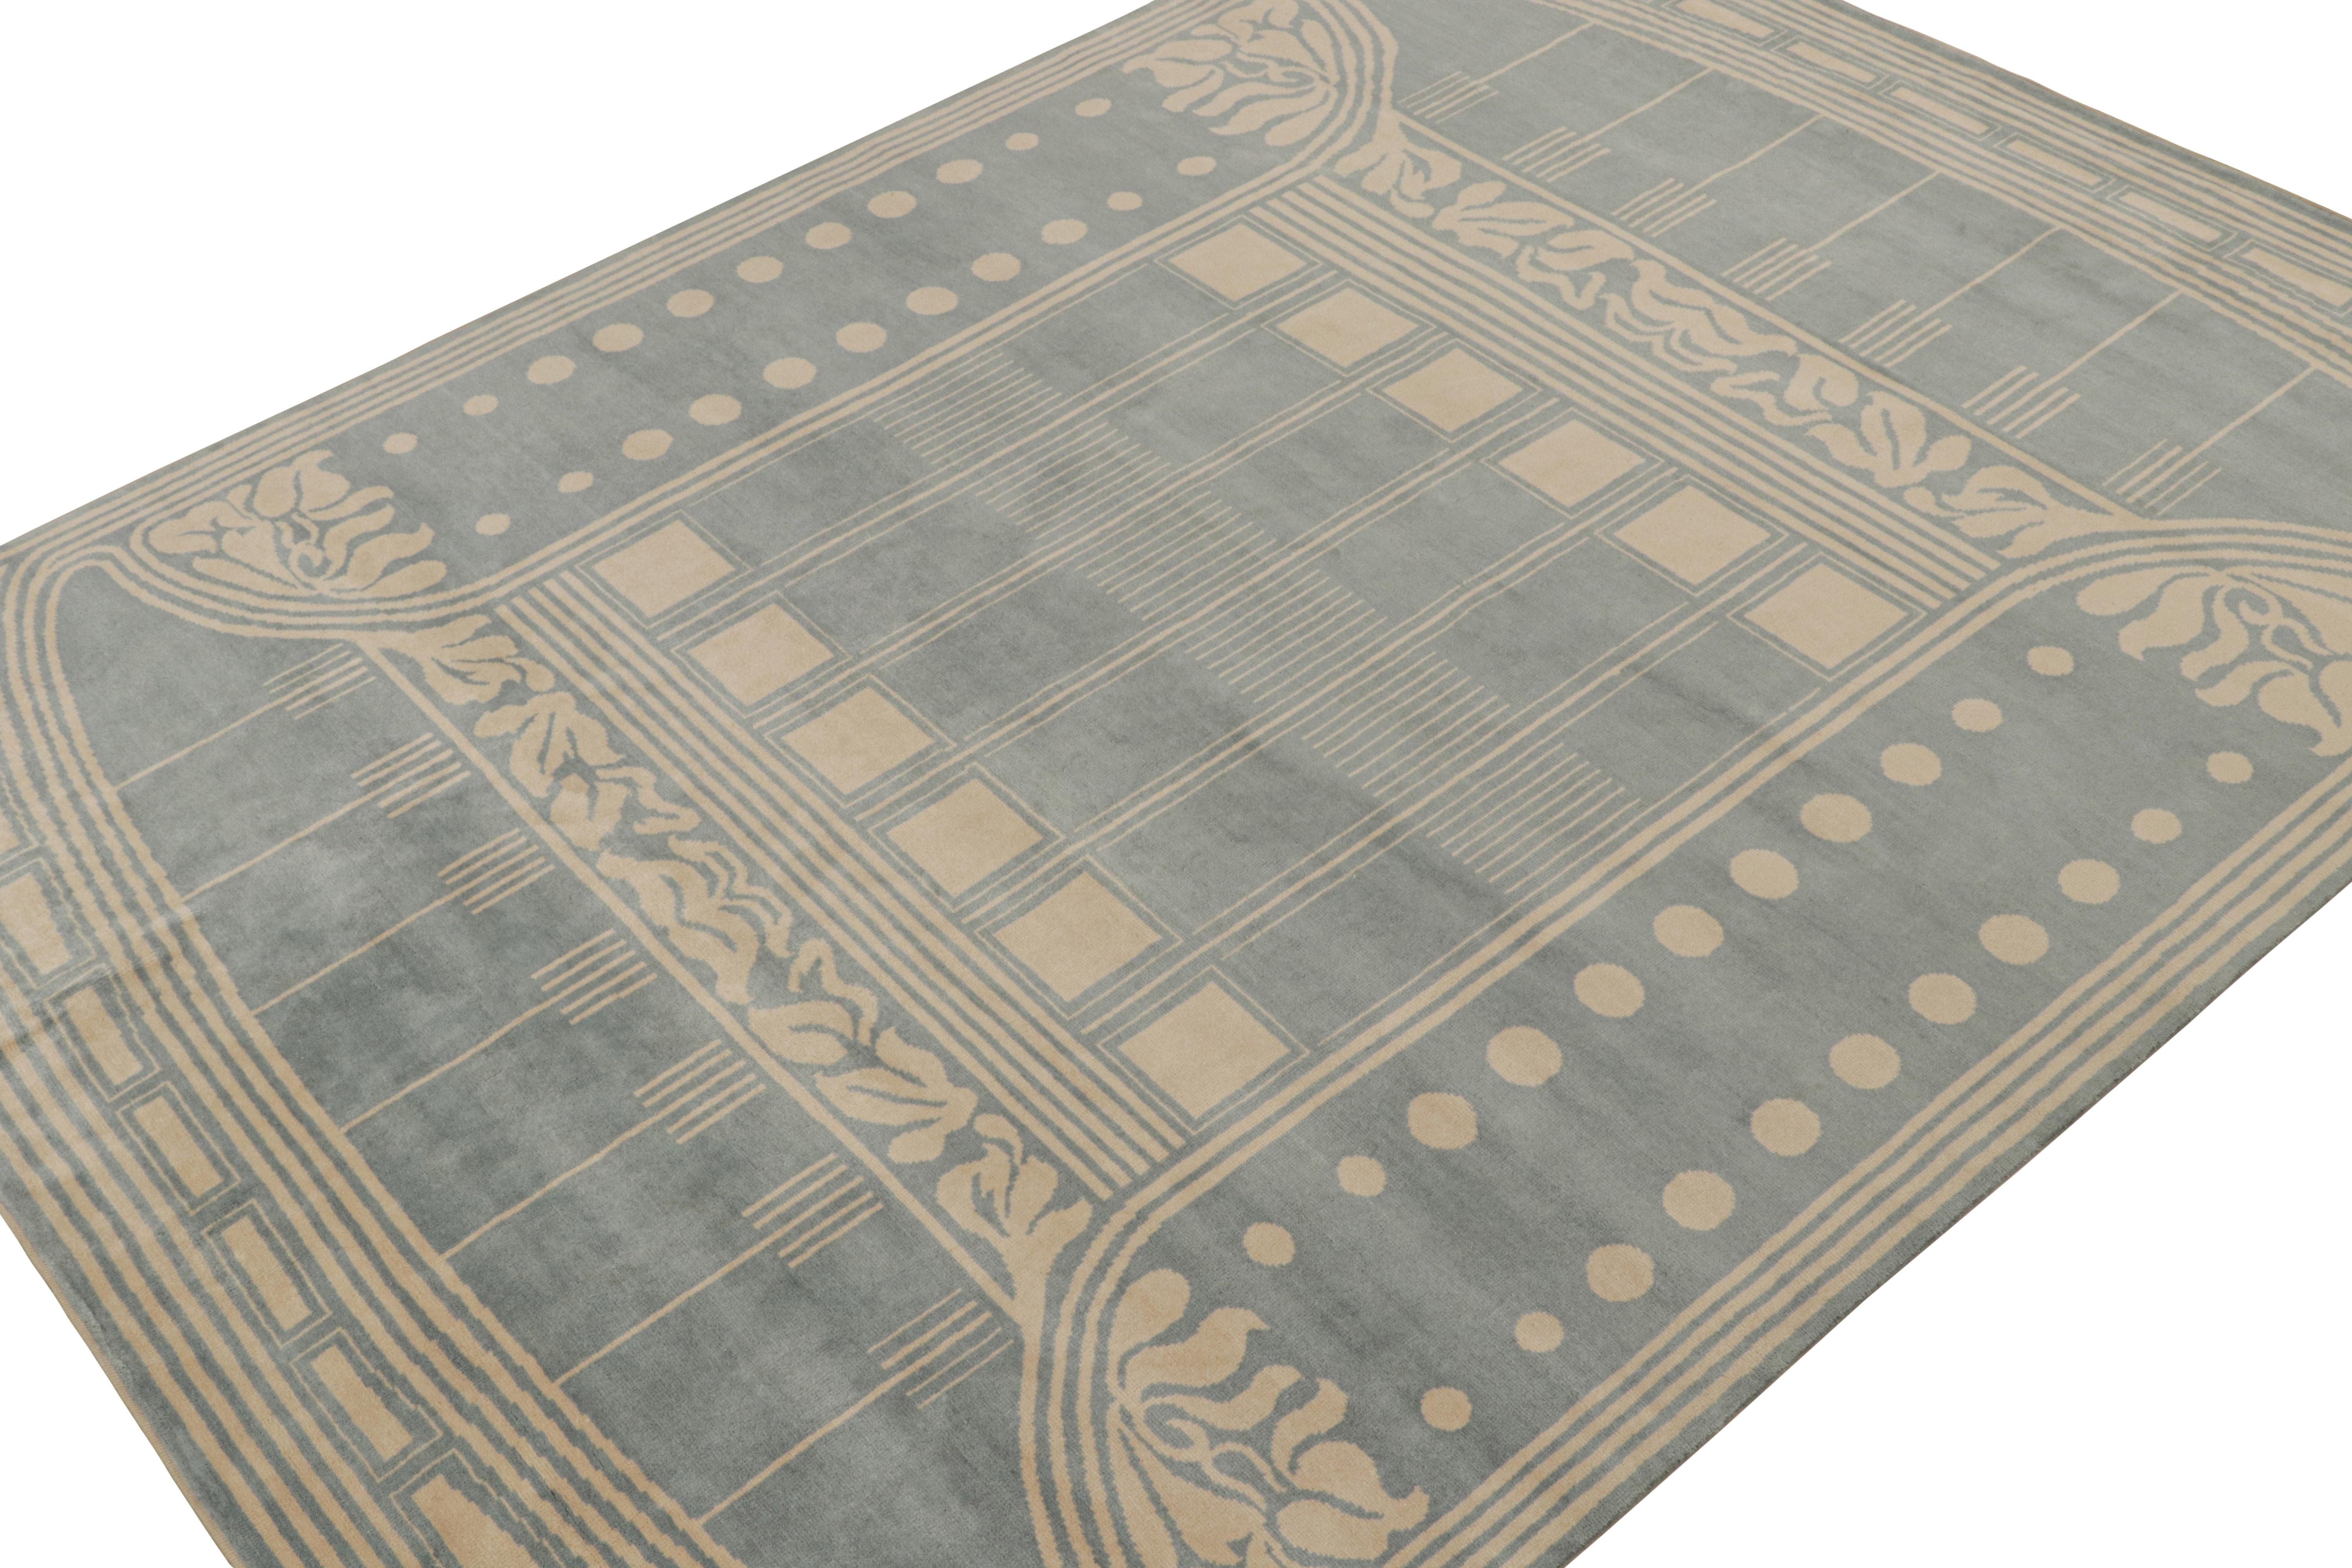 Noué à la main en laine, un tapis moderne 9x12 de la collection Art Deco de Rug & Kilim.

Sur le design

Ce tapis de style Art déco français s'inspire de l'architecture des styles européens des années 1920. Il présente des motifs géométriques